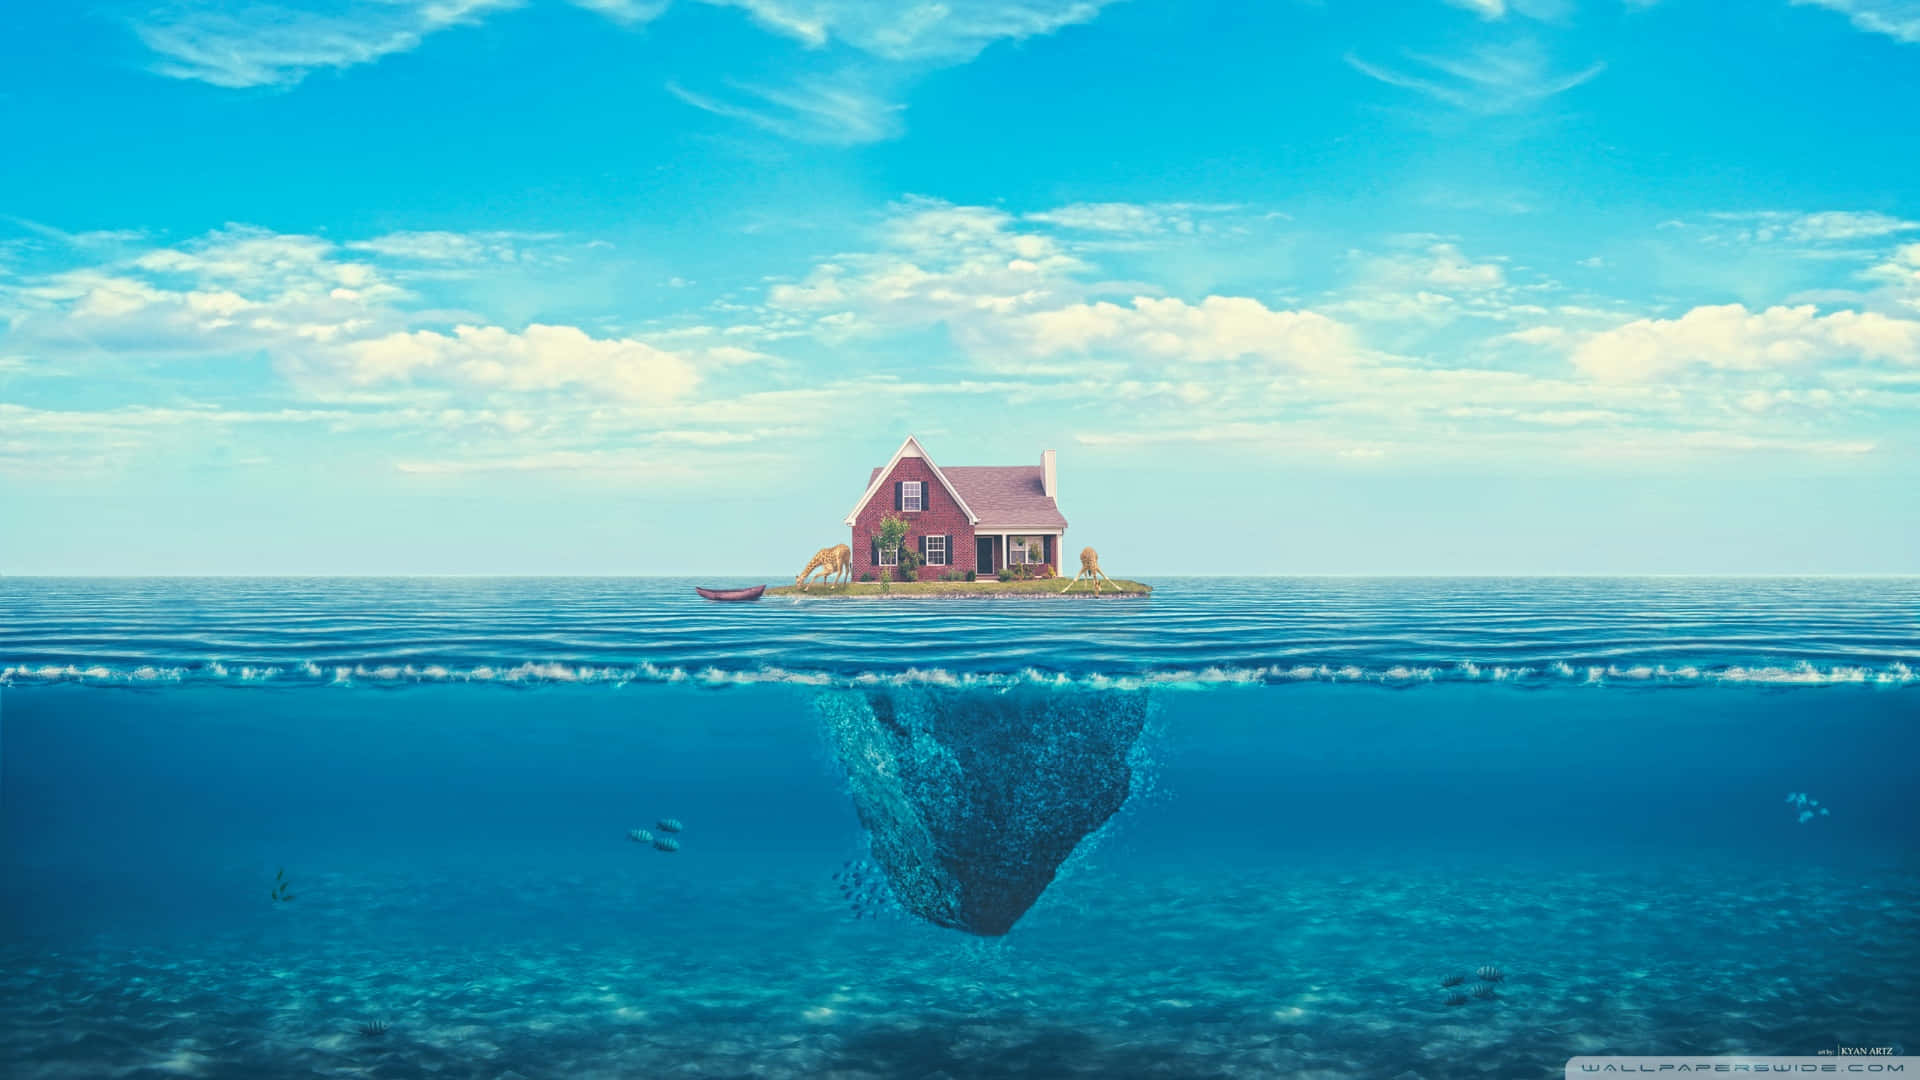 Einhaus, Das Im Meer Treibt, Mit Blauem Himmel. Wallpaper